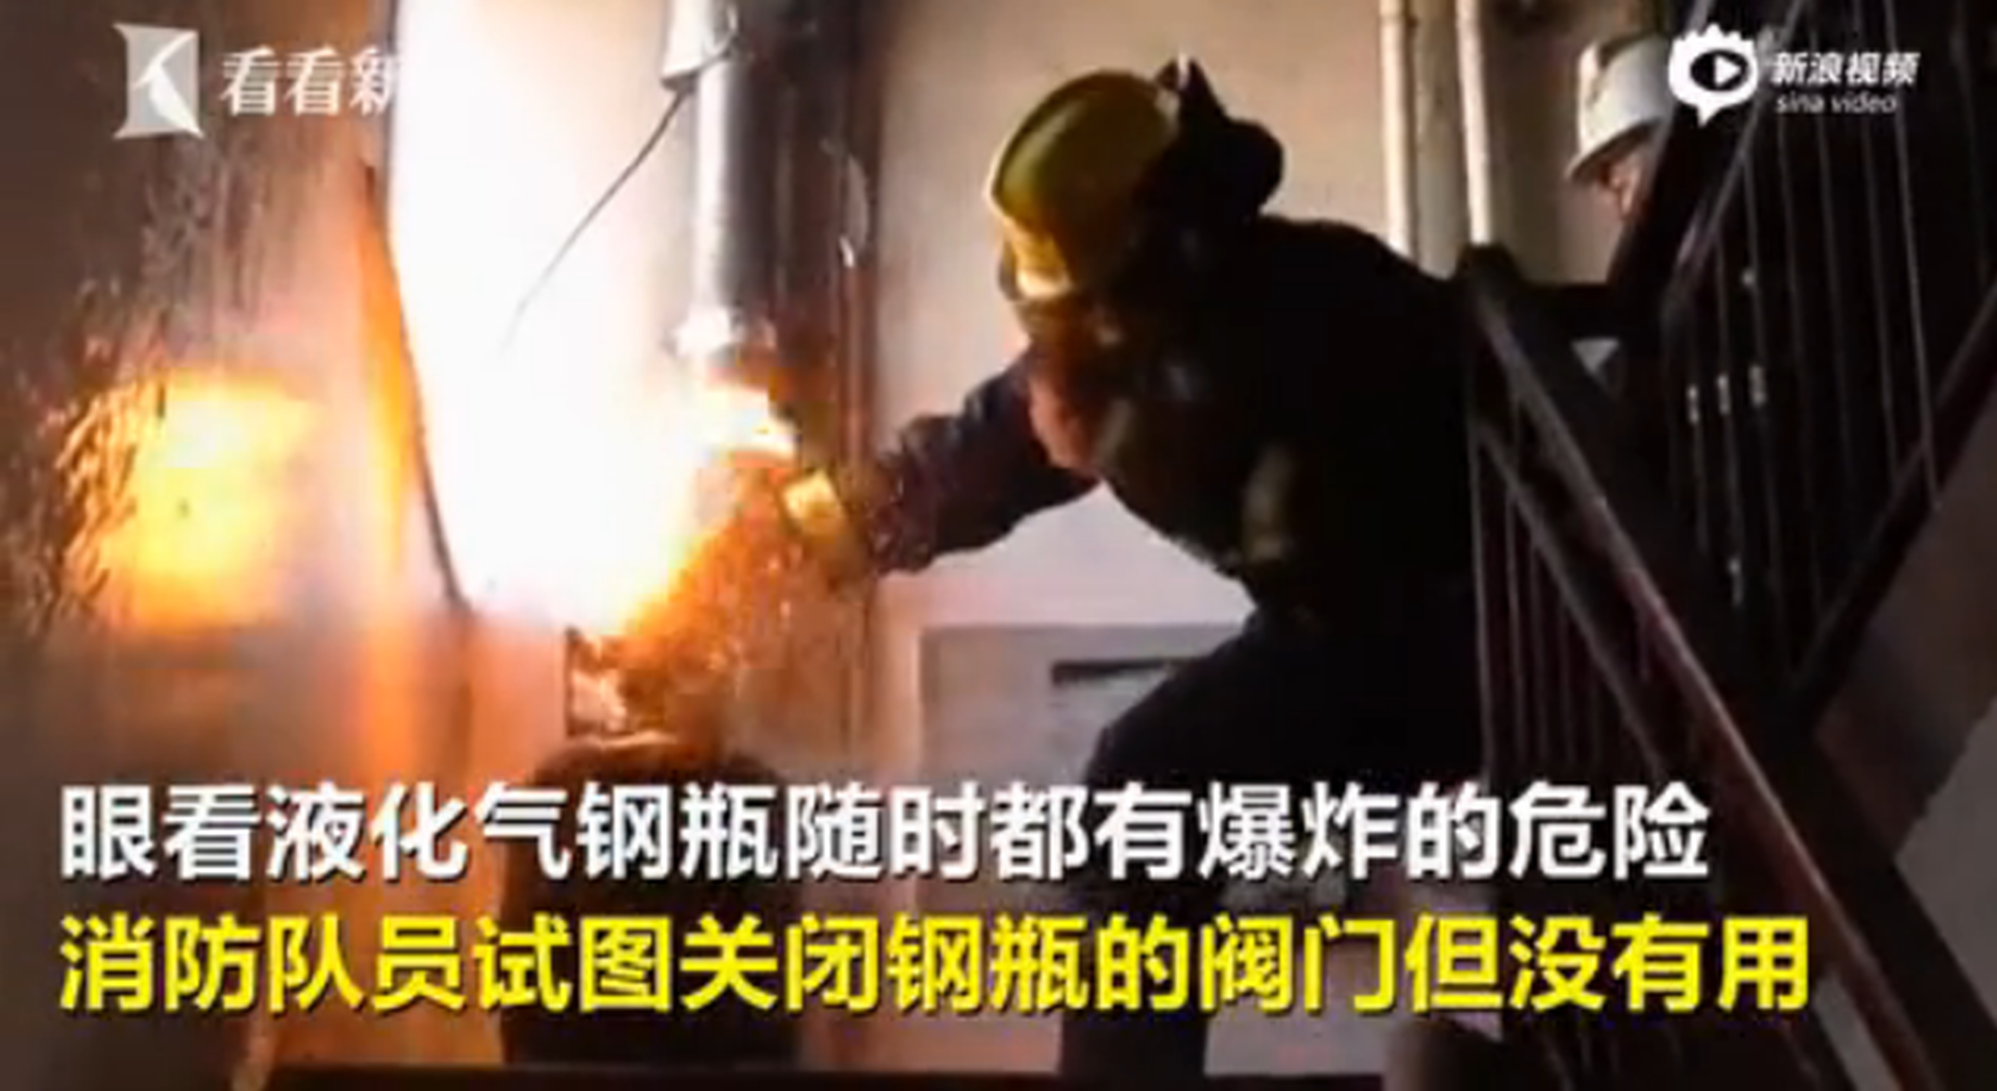 实拍:做饭引燃液化钢瓶 消防员徒手救火